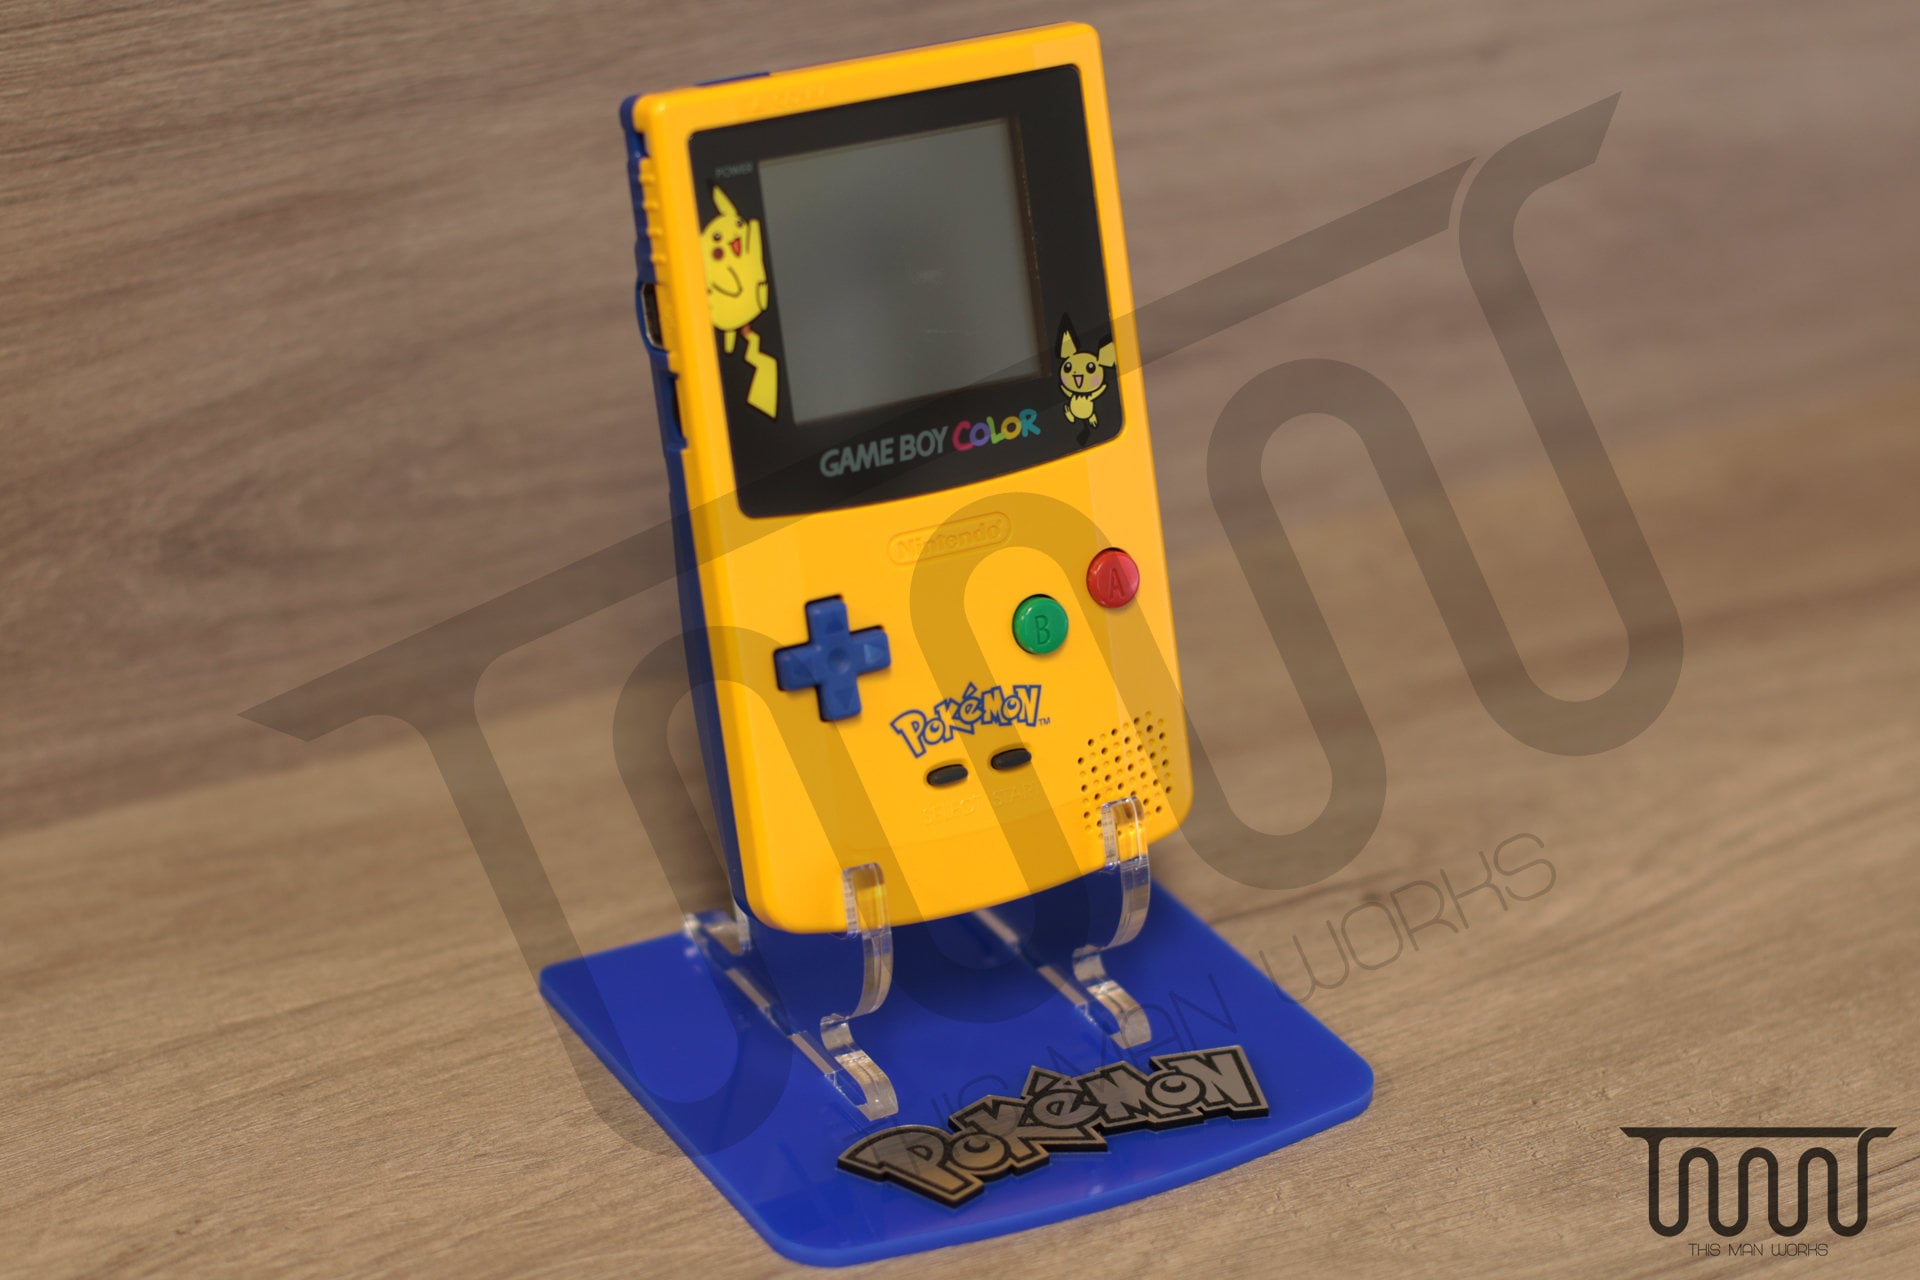 Pokémon Version Argent - Jeu Game Boy Color - jouets rétro jeux de